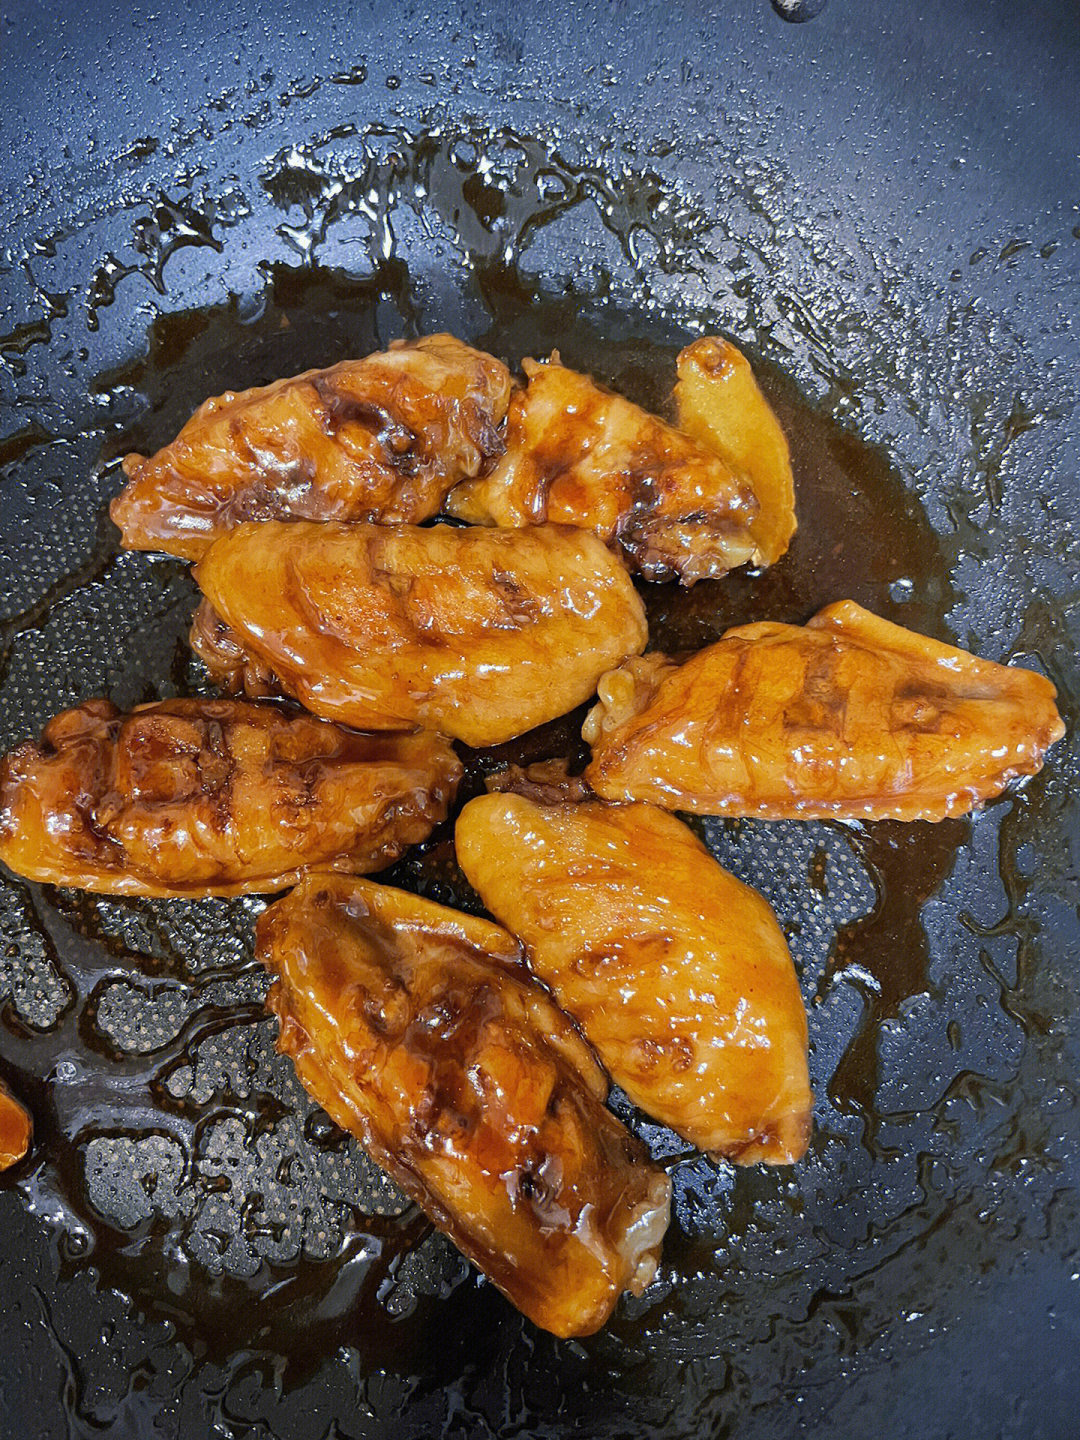 [一r]可乐鸡翅鸡翅划上几刀方便入味,焯水去浮末锅里烧油,把鸡翅煎至